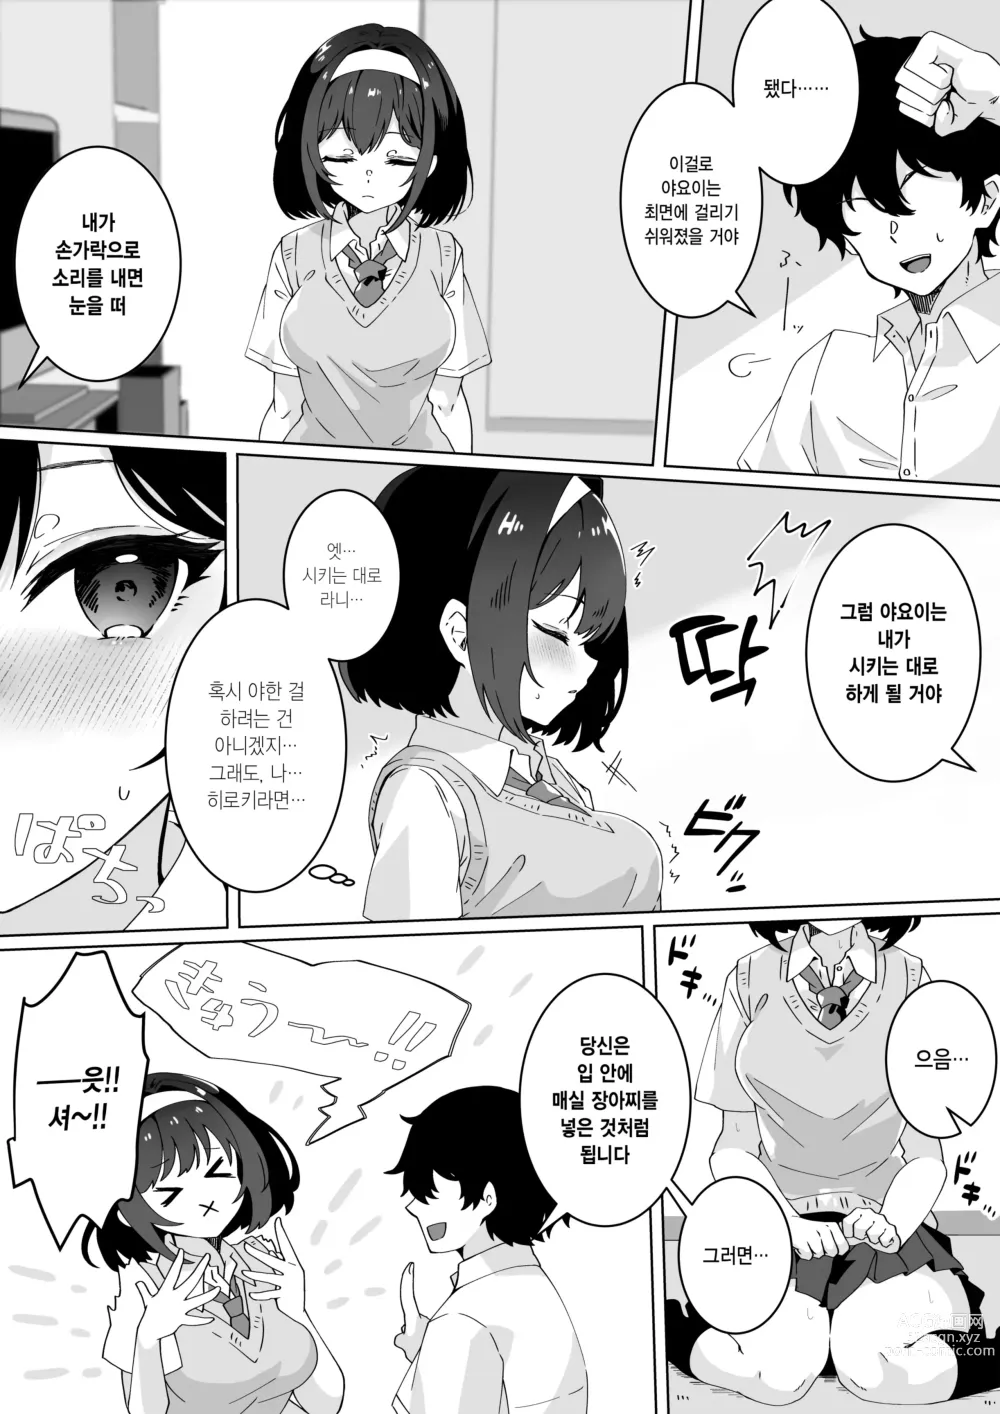 Page 7 of doujinshi 최면술이라면 거유 JK에게 무엇이든 할 수 있다는 게 정말인가요?